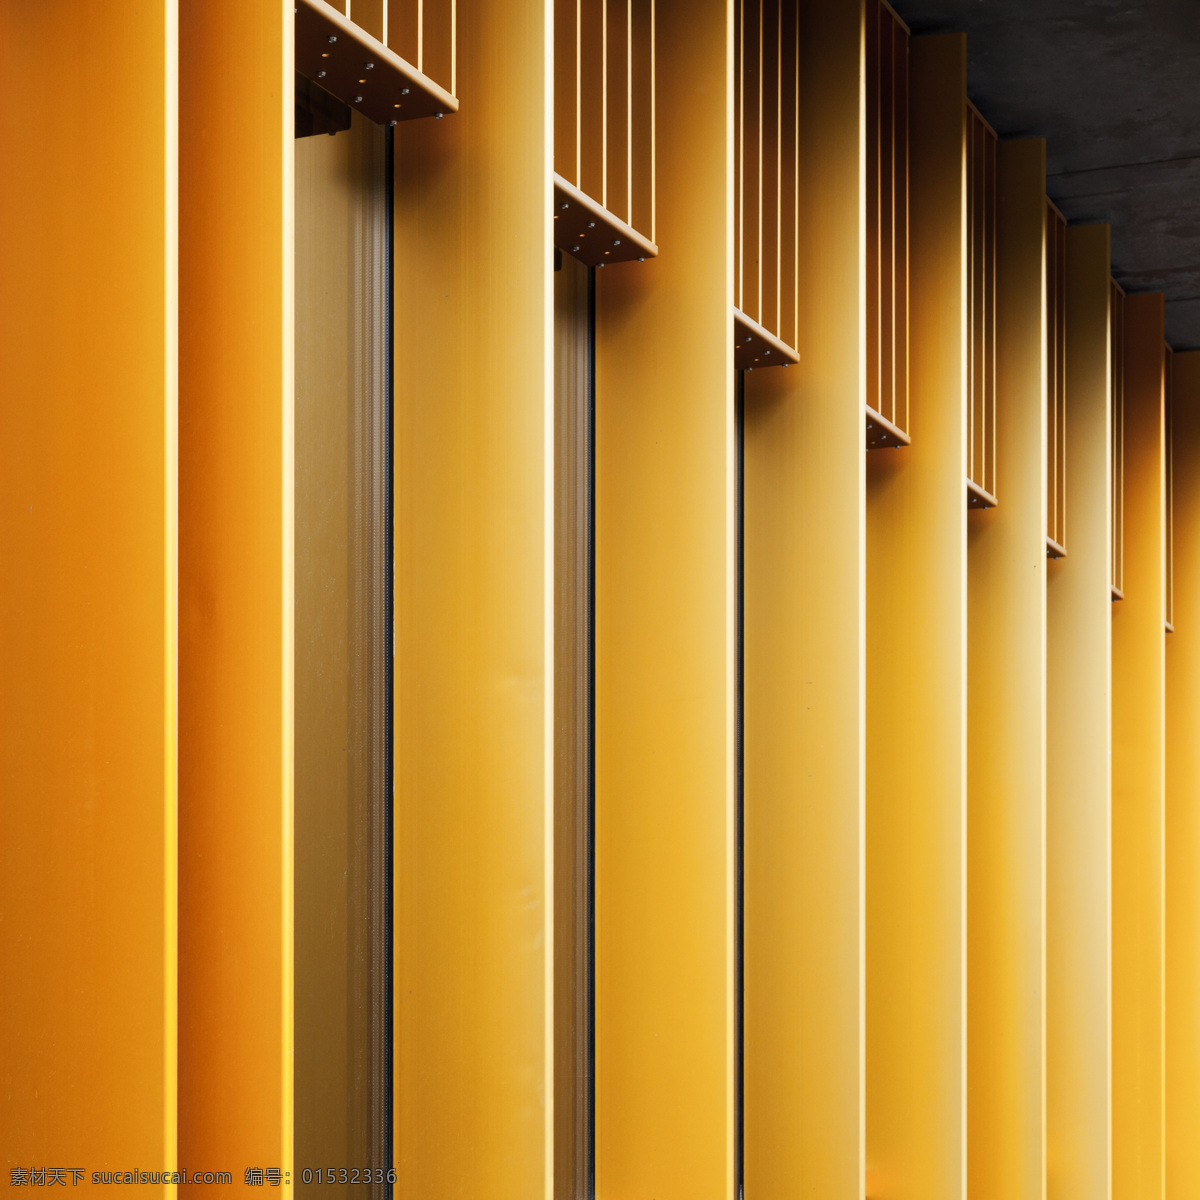 建筑结构 摄影图片 建筑摄影 橙色建筑 建筑设计 其他类别 生活百科 橙色